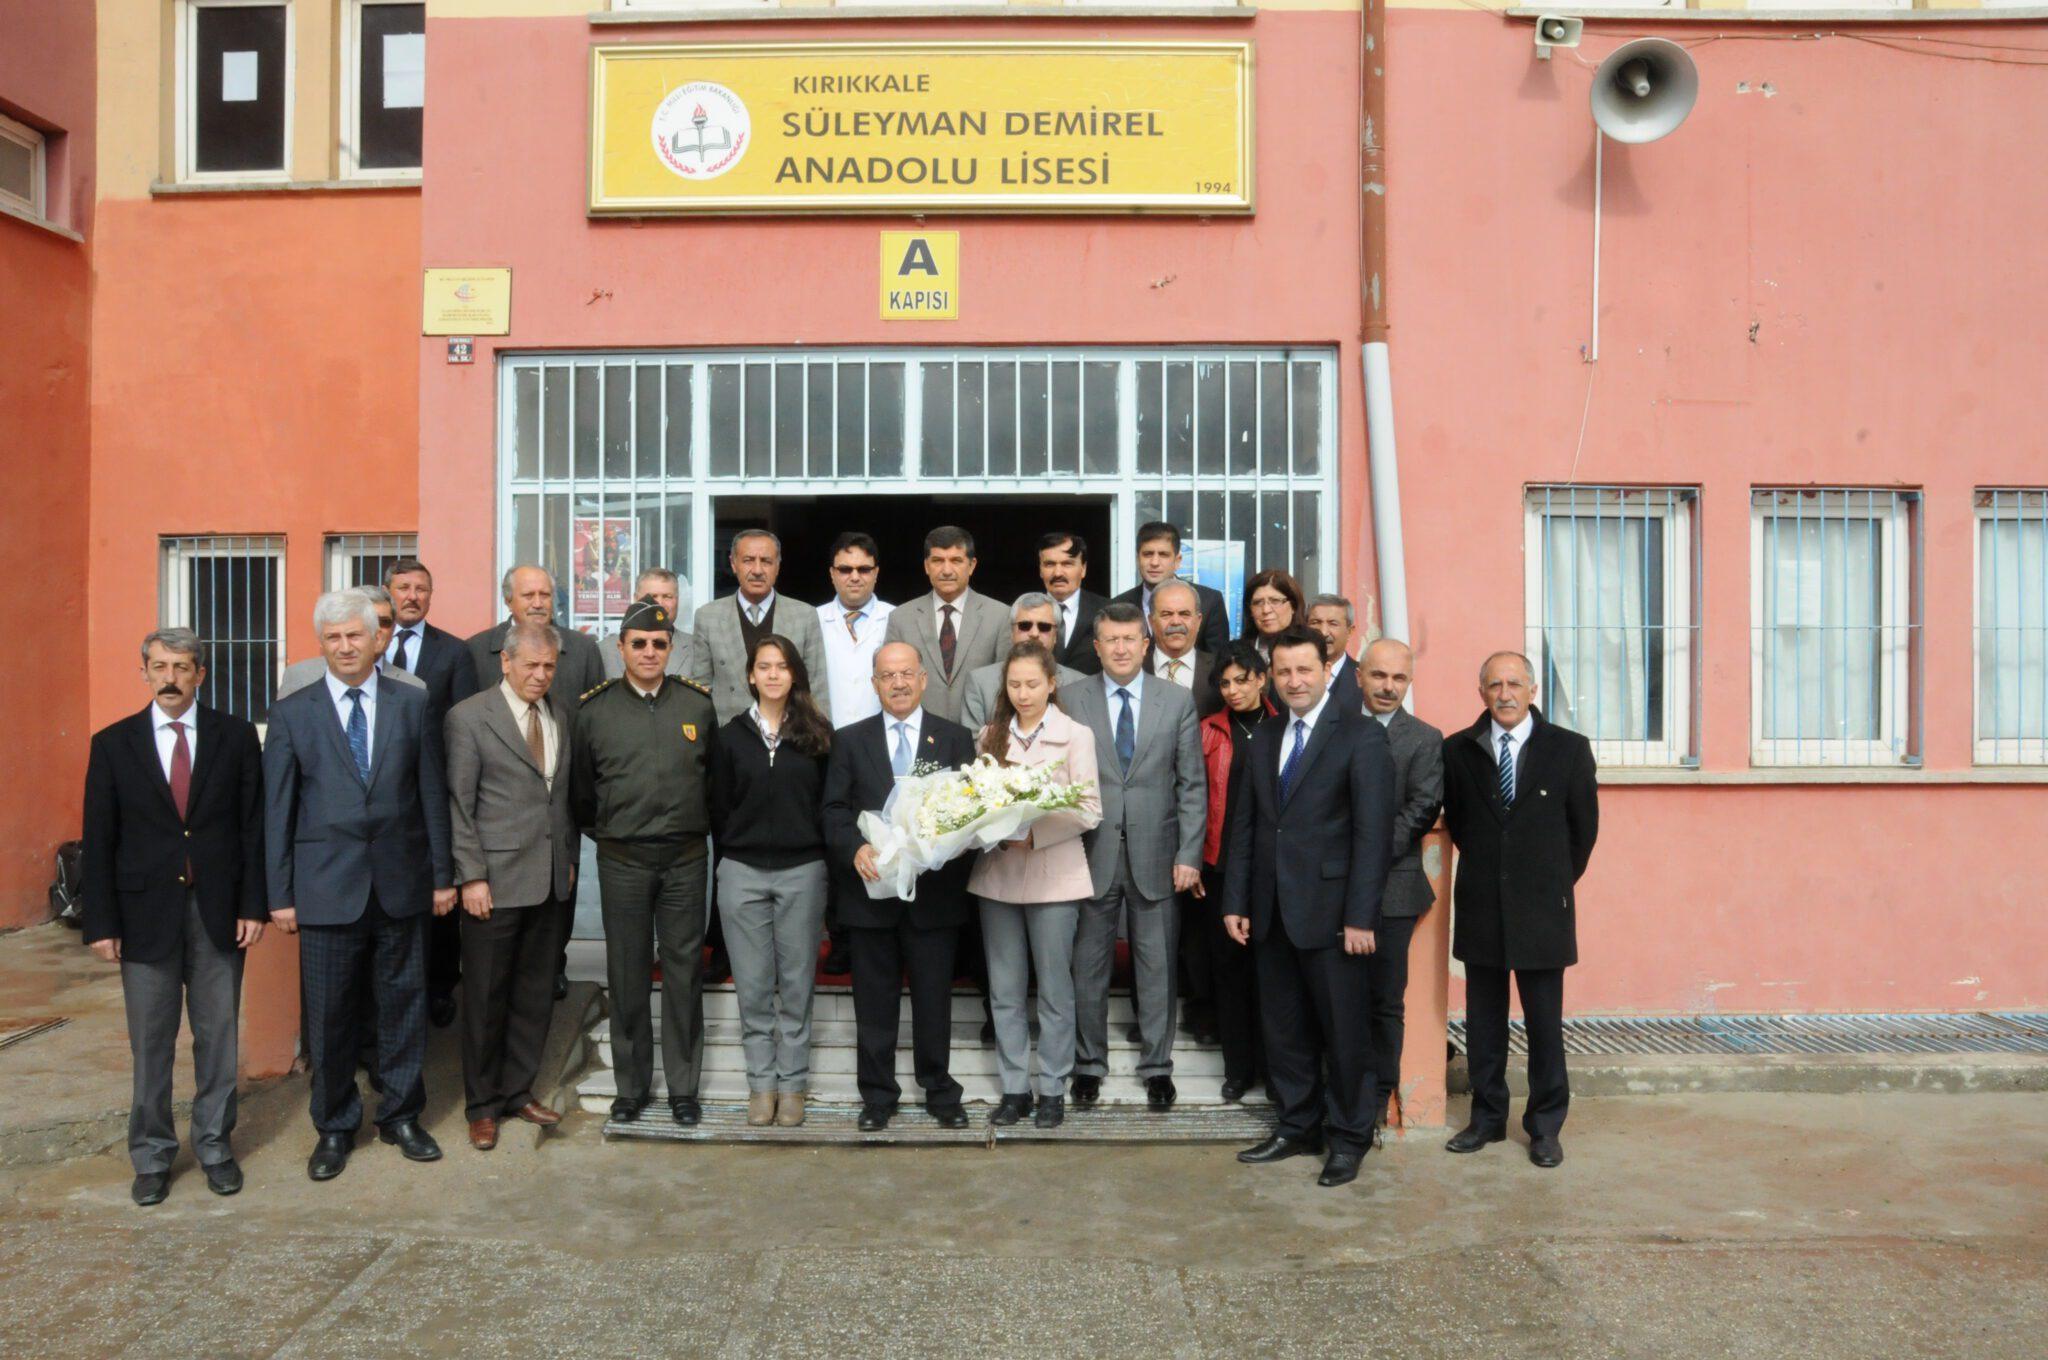 Kolat Süleyman Demirel Lisesi’ni ziyaret etti - Kırıkkale Haber, Son Dakika Kırıkkale Haberleri